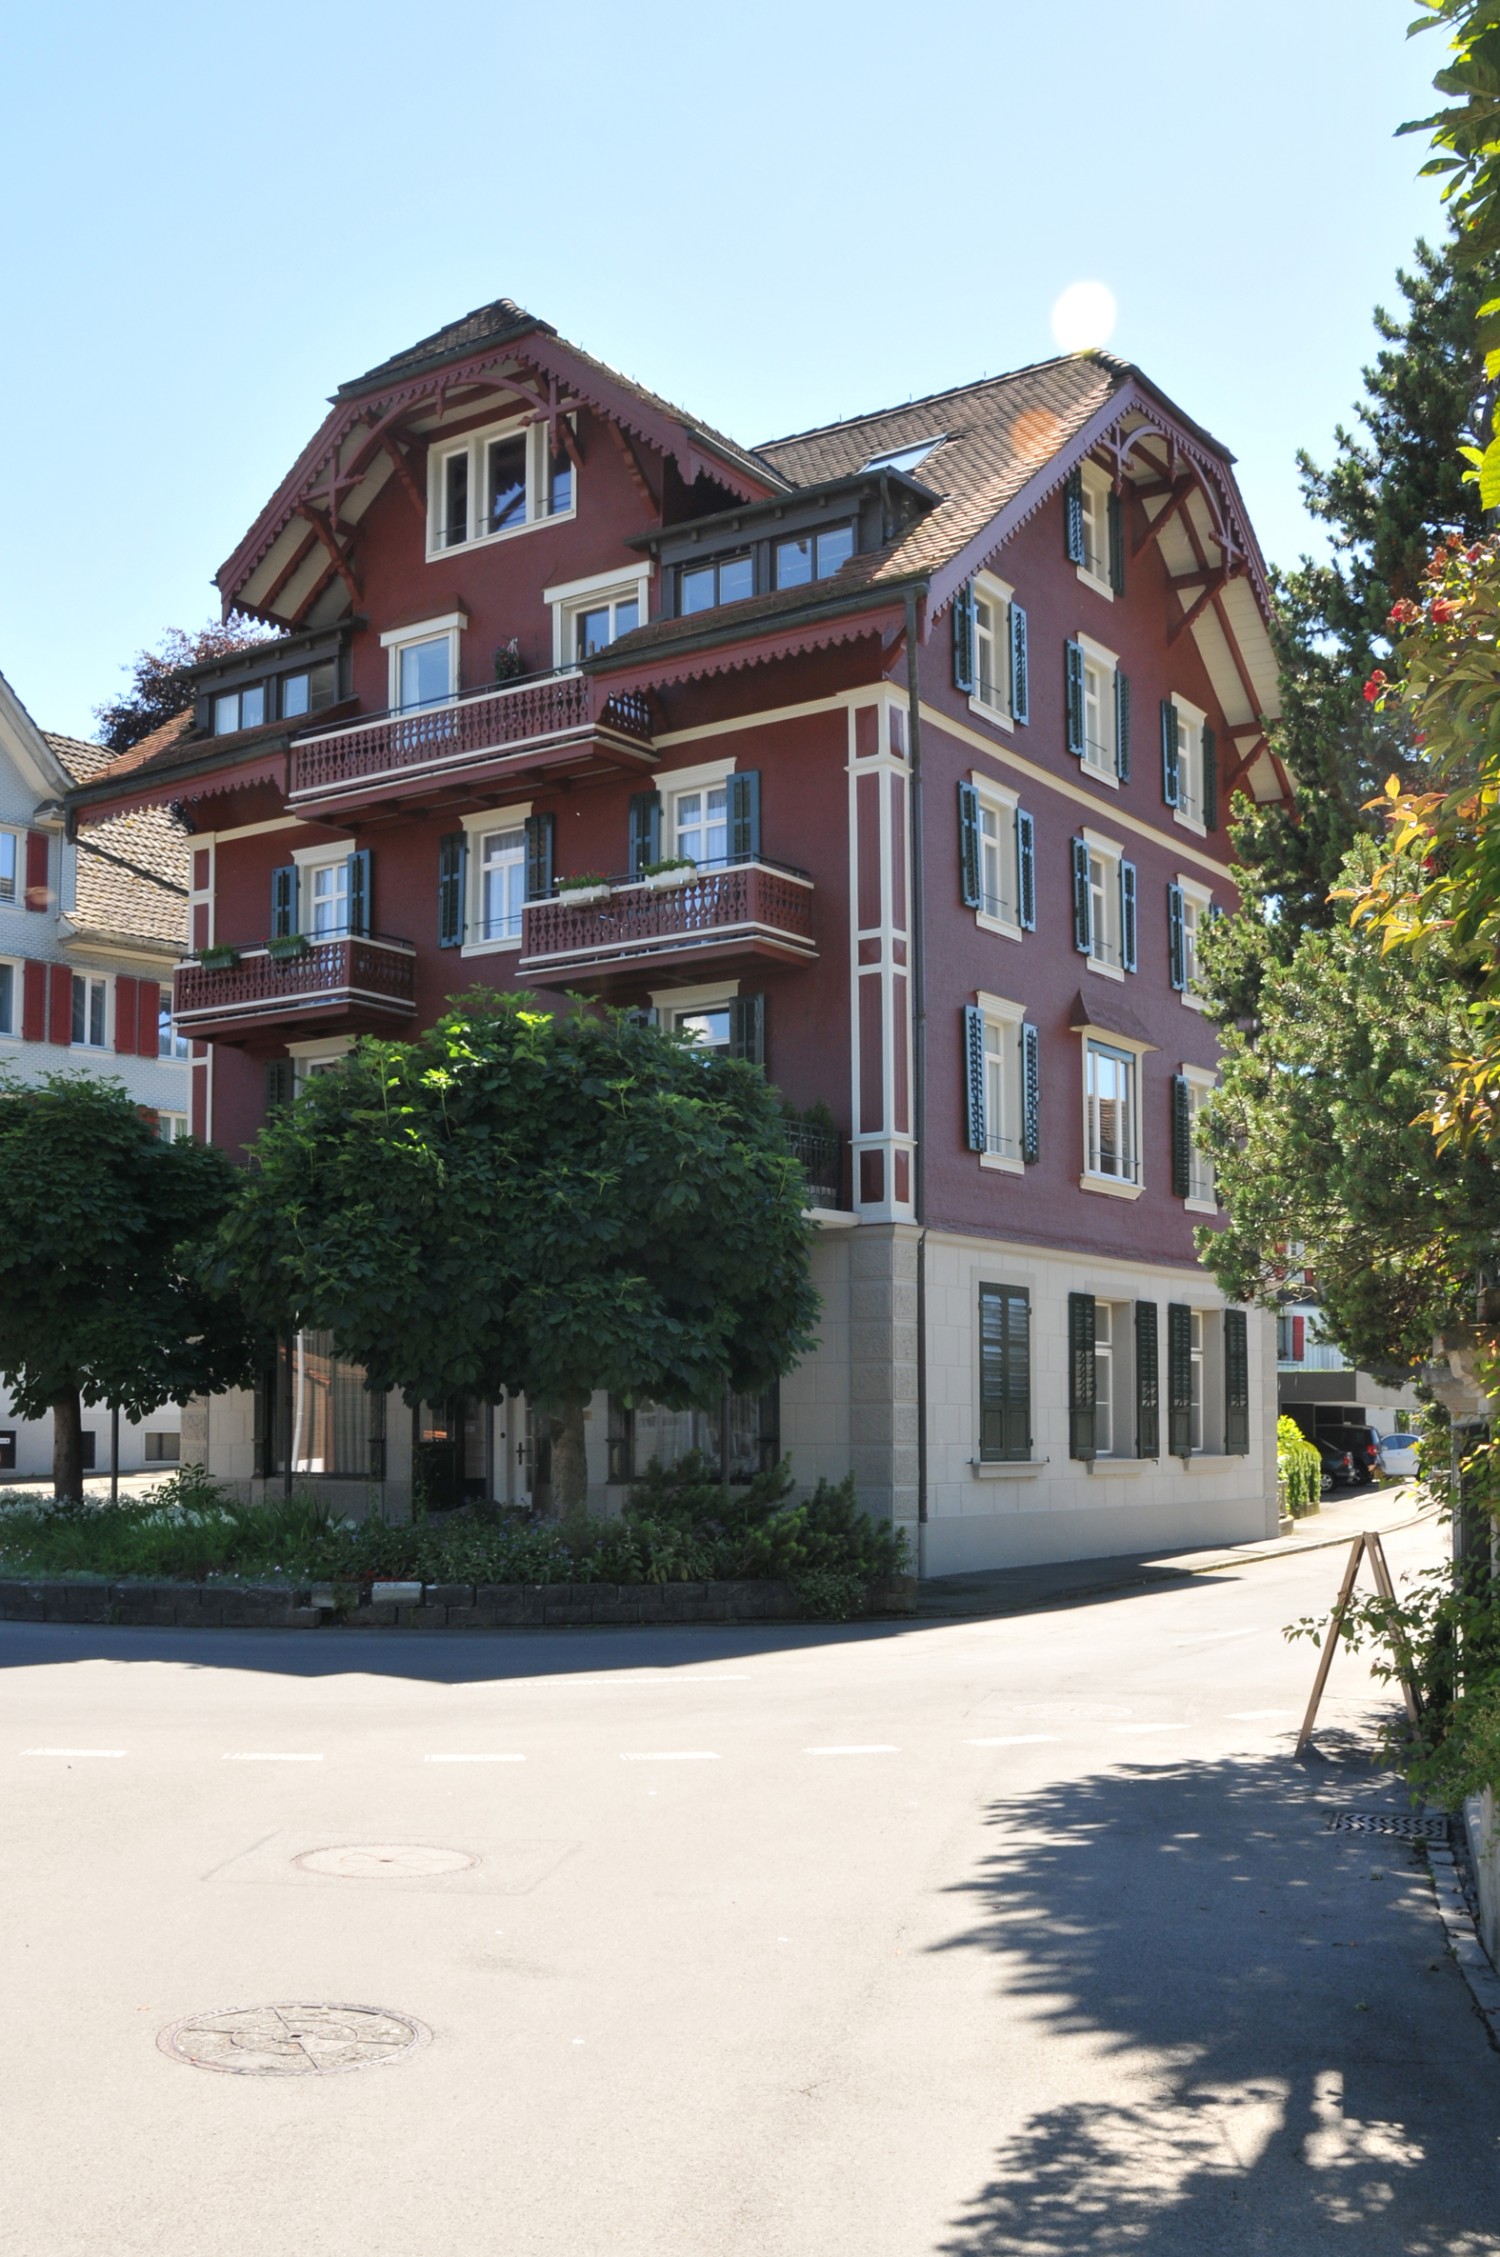 HUMMBURKART ARCHITEKTEN: Renovation Holzhaus Seeplatz in Buochs